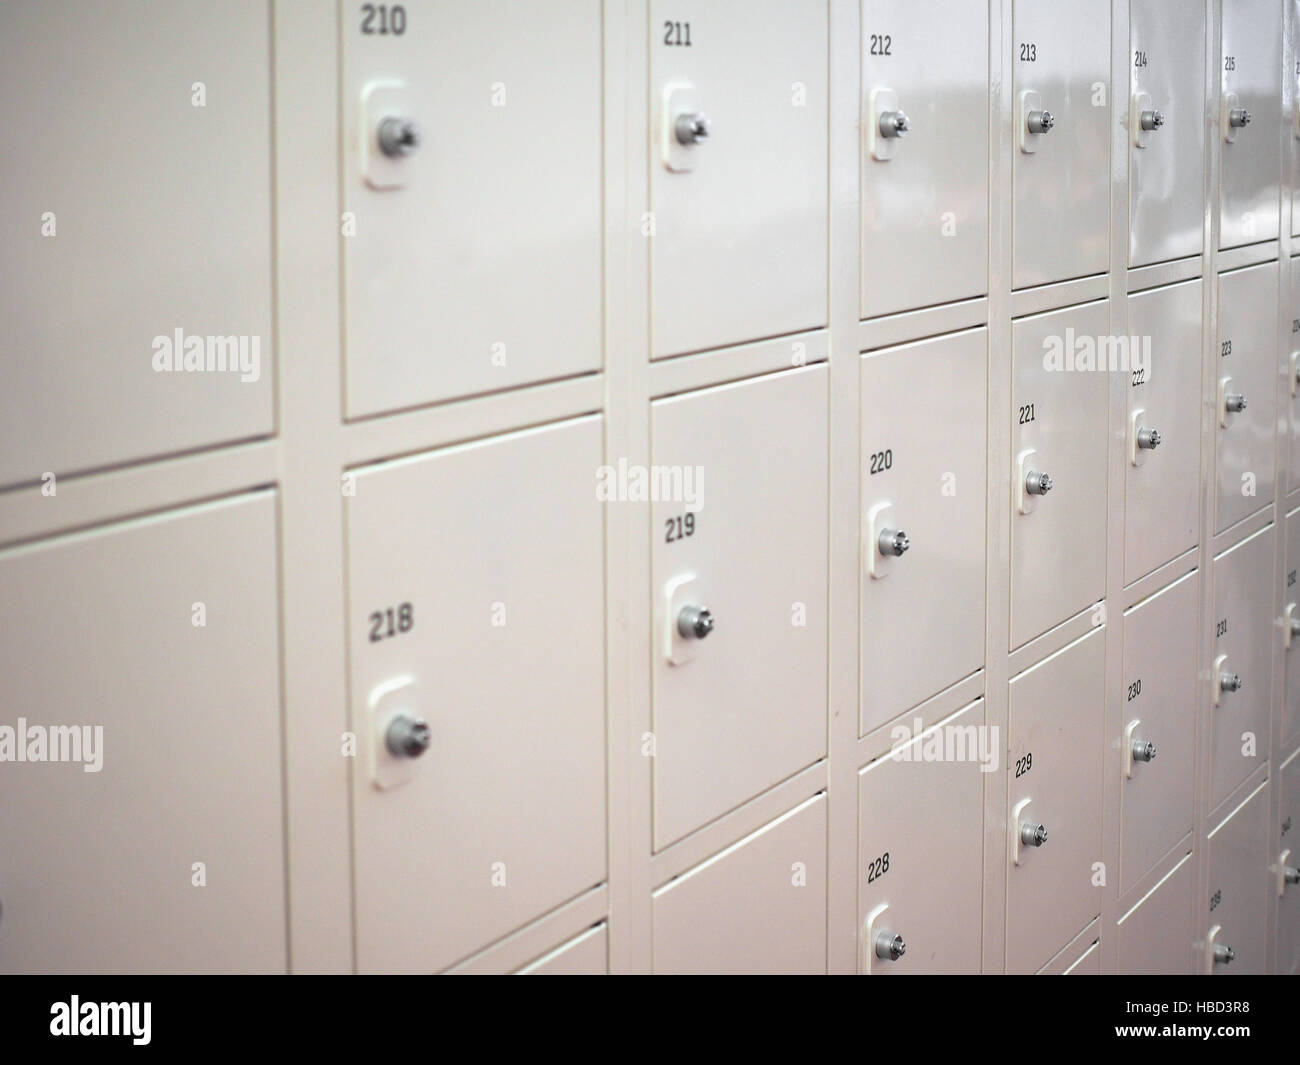 Many Locker cabinets Stock Photo